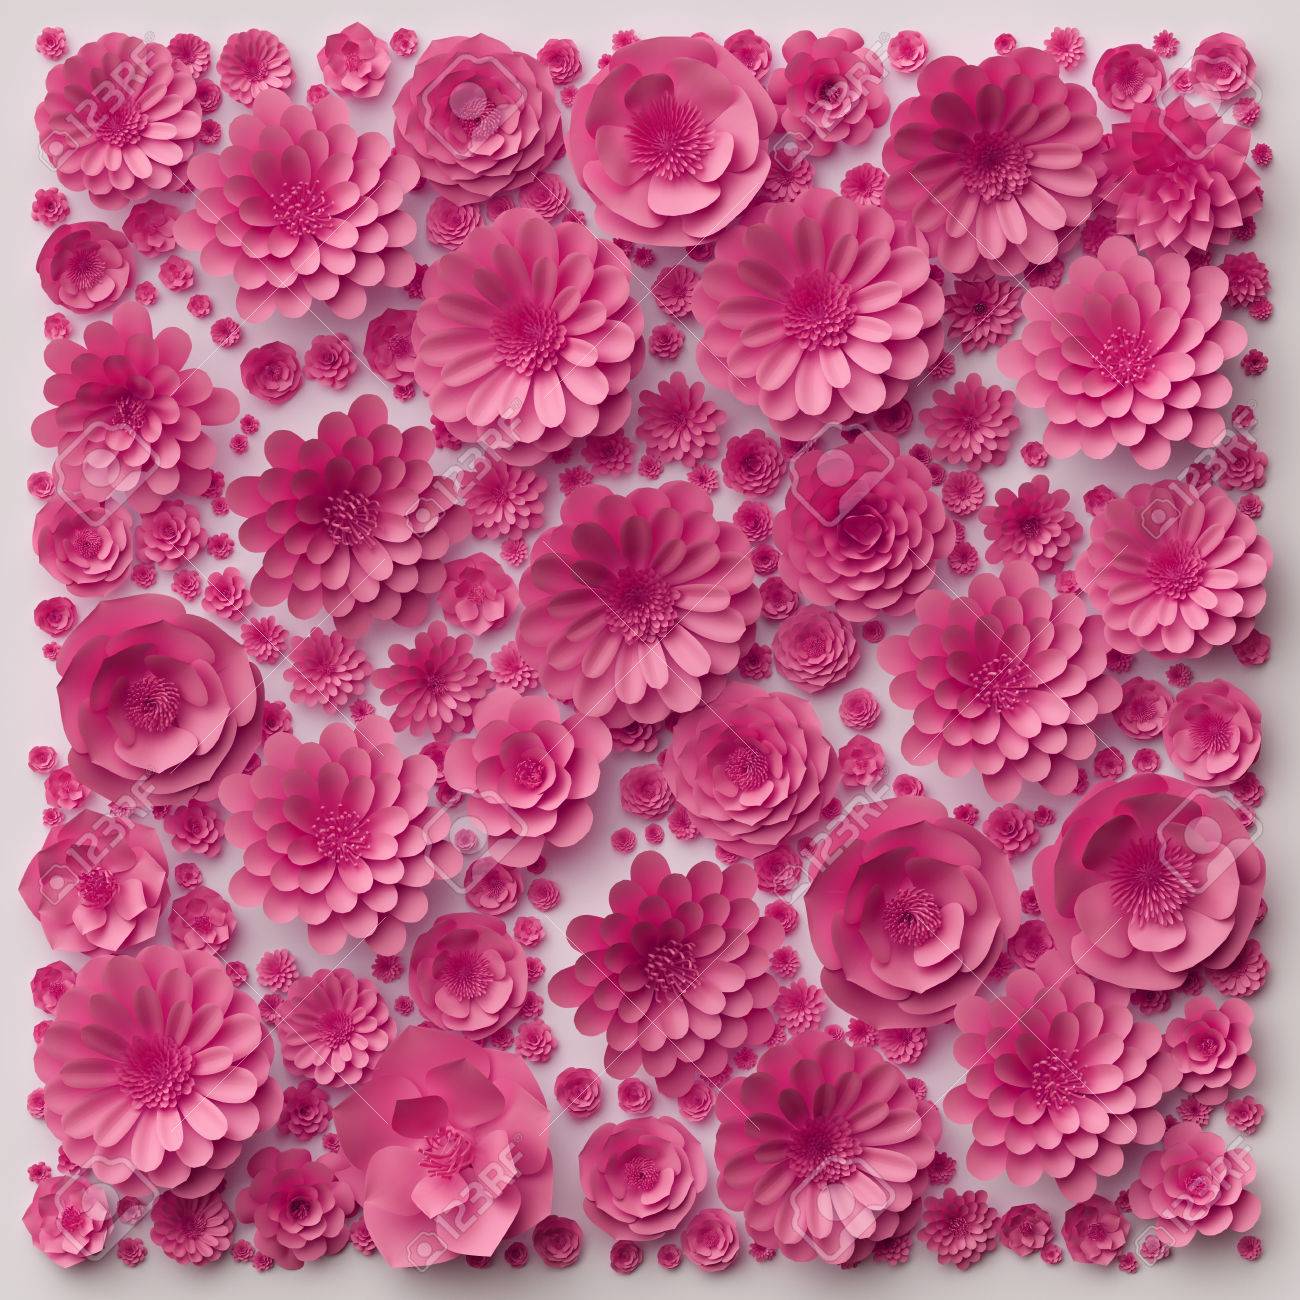 3d Illustration Pink Paper Flowers Wallpaper Floral Background